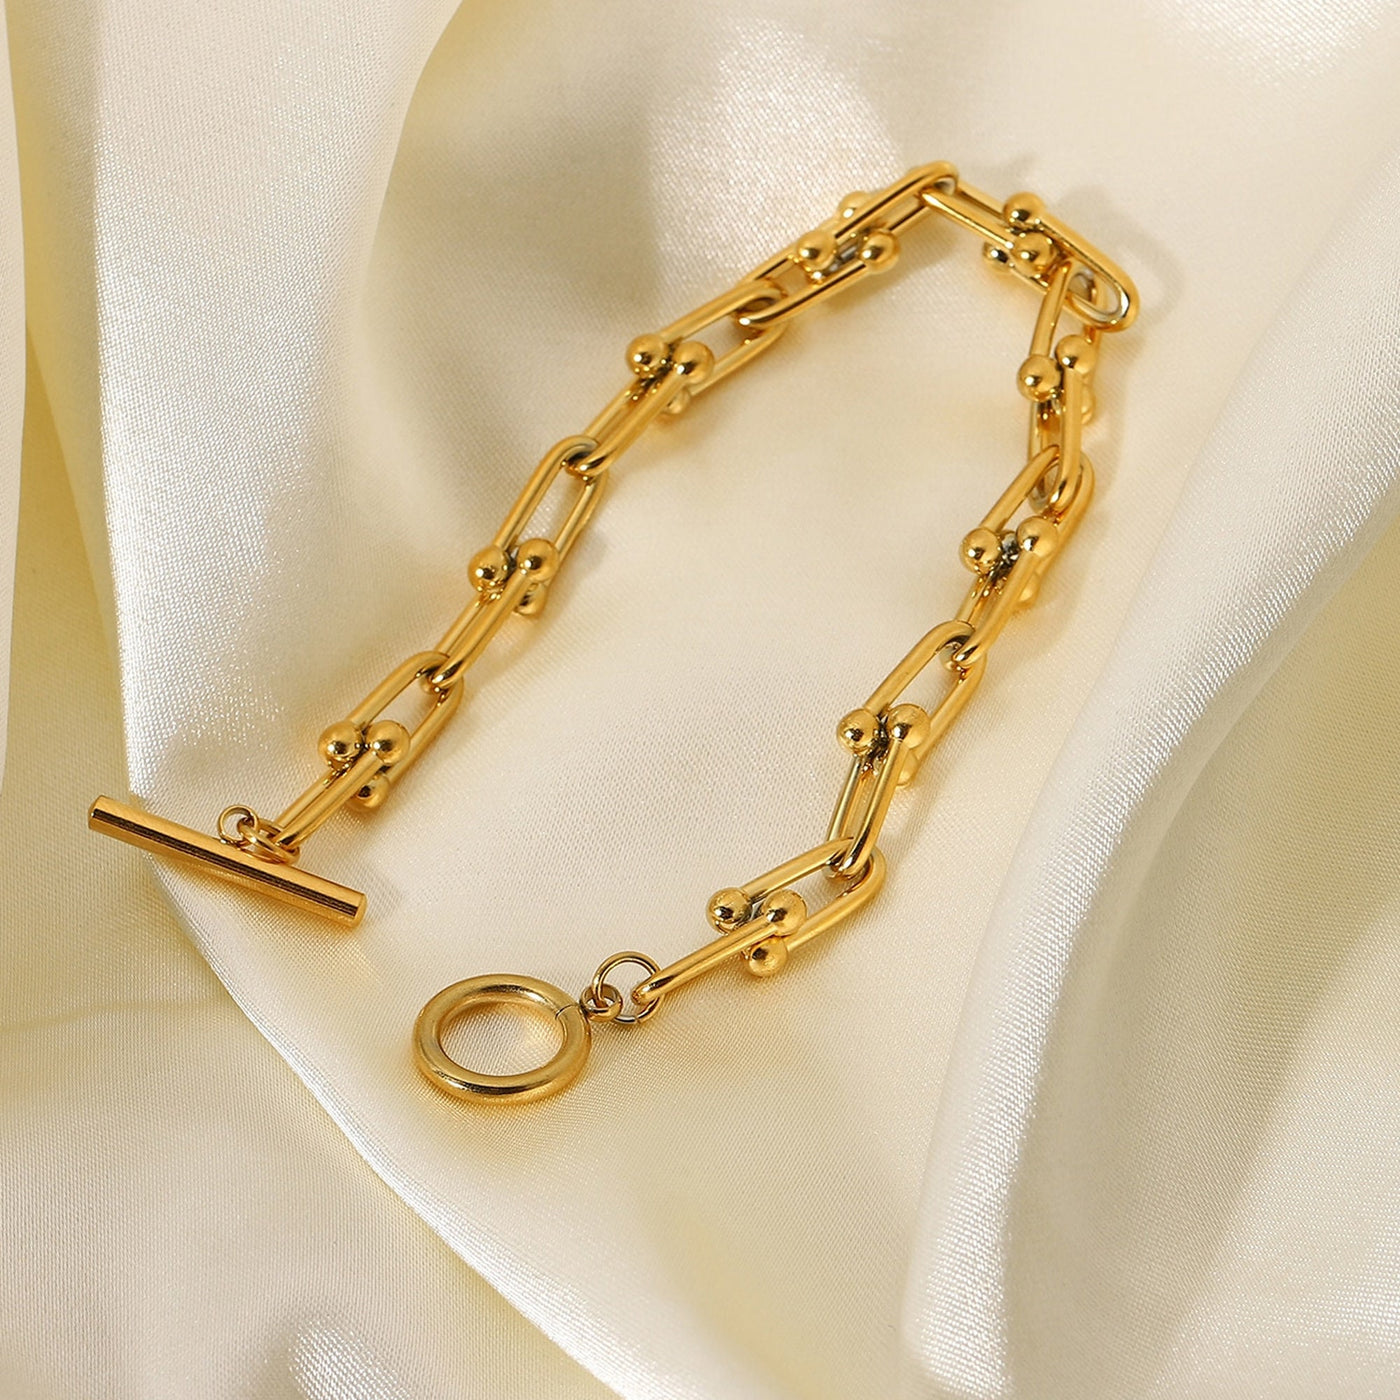 18k Gold U-Link Bracelet